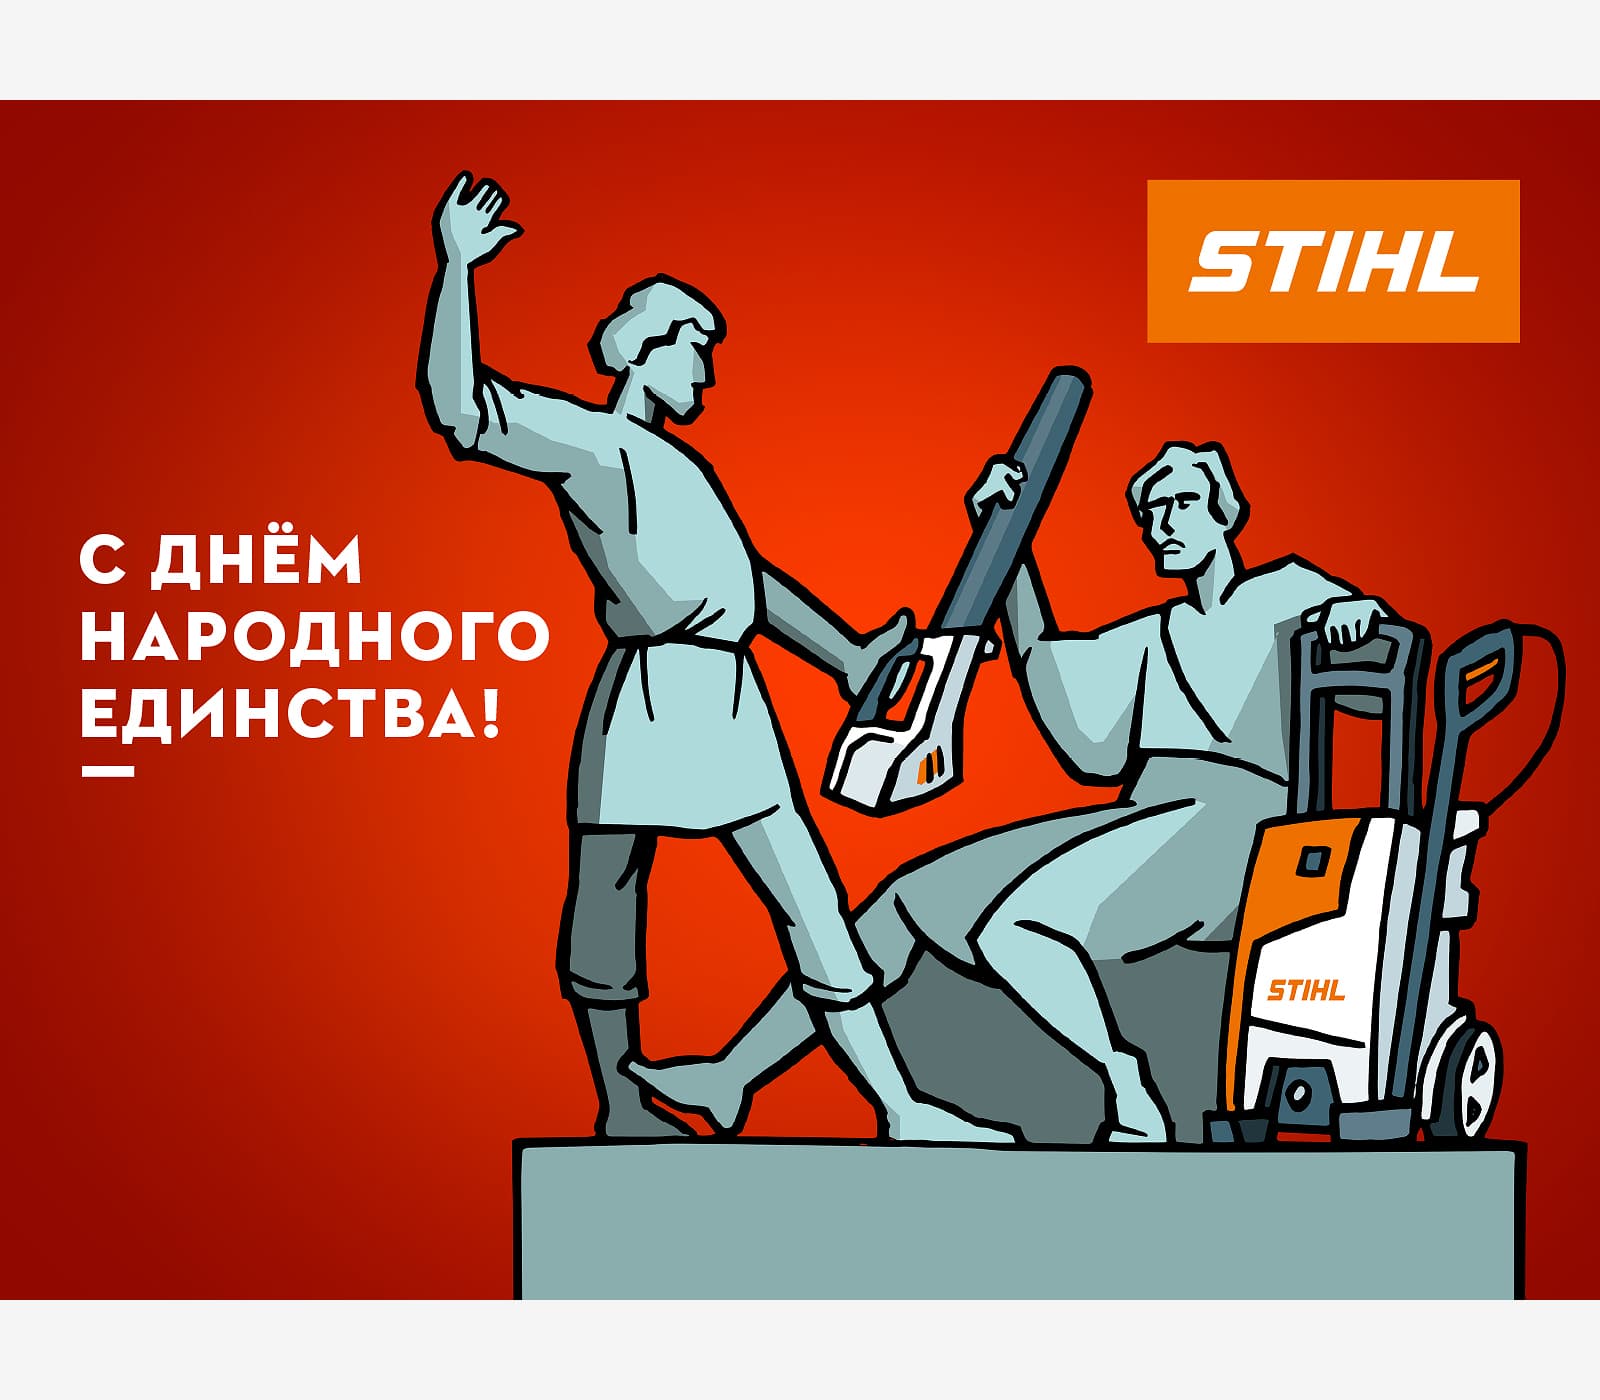 Серия электронных корпоративных поздравительных открыток на все праздники 2020 года для компании STIHL